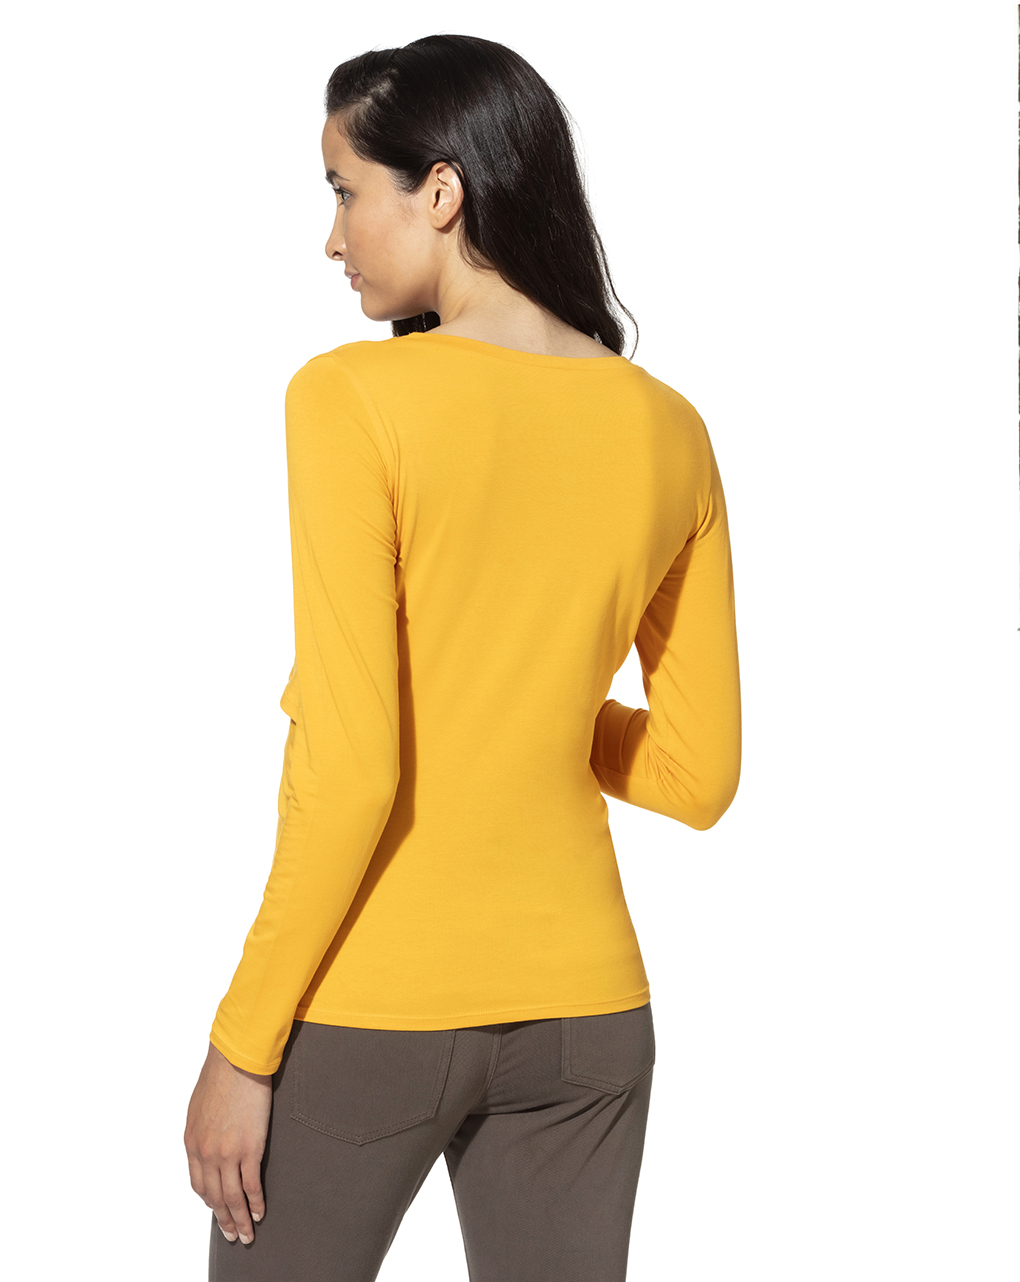 γυναικείο t-shirt θηλασμού κίτρινο - Prénatal